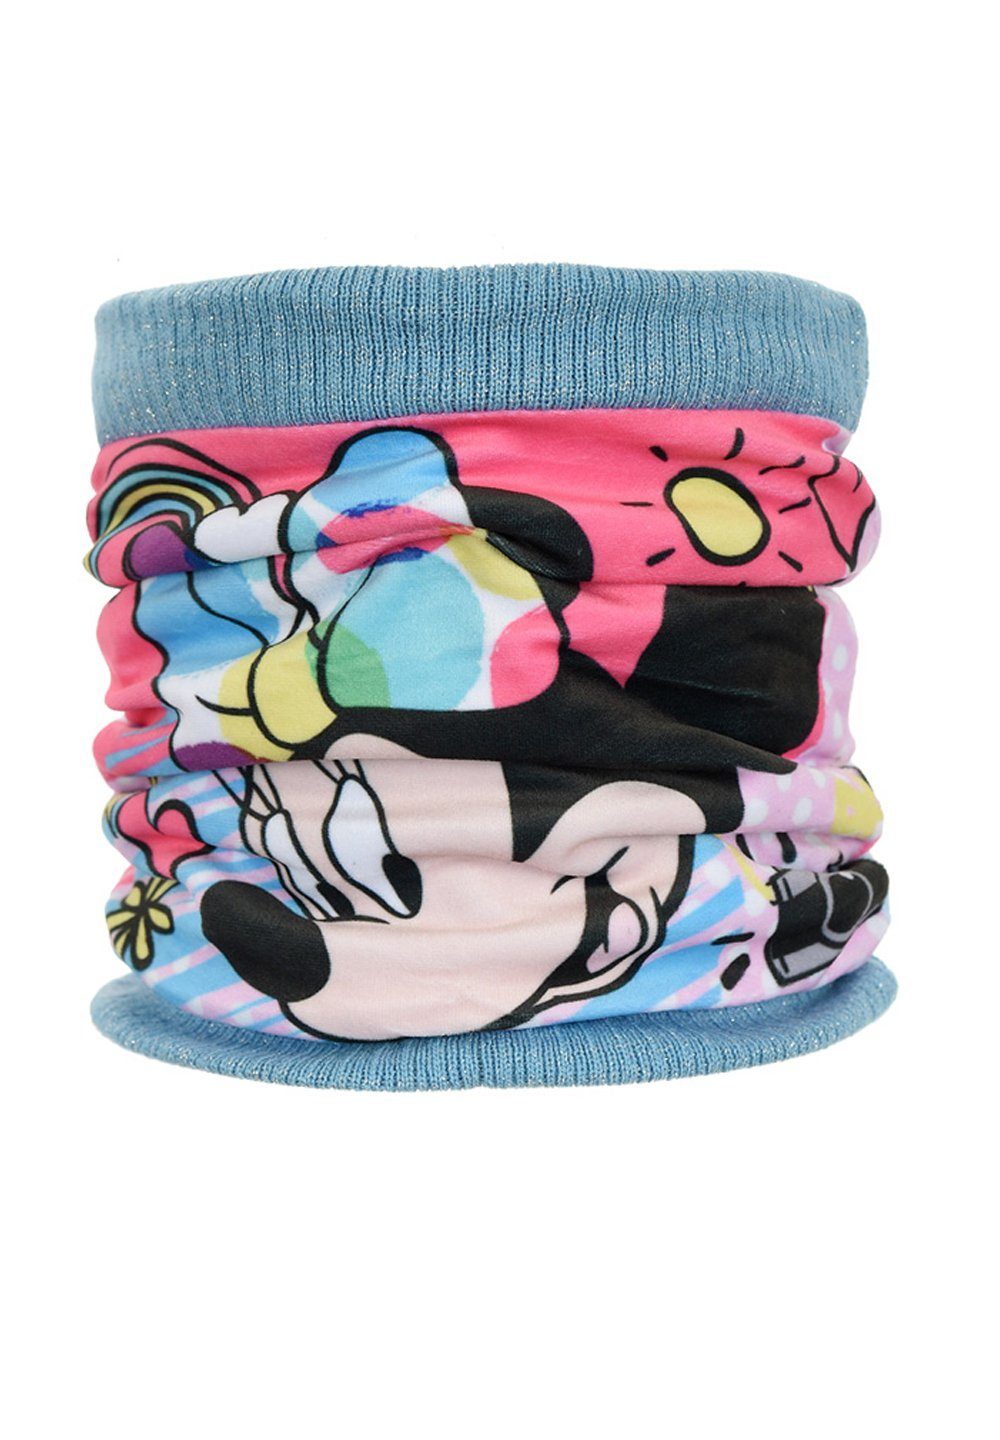 Disney Minnie Mouse Loop Kinder Mädchen Winter-Schal Schlauch-Schal Mini Maus Türkis